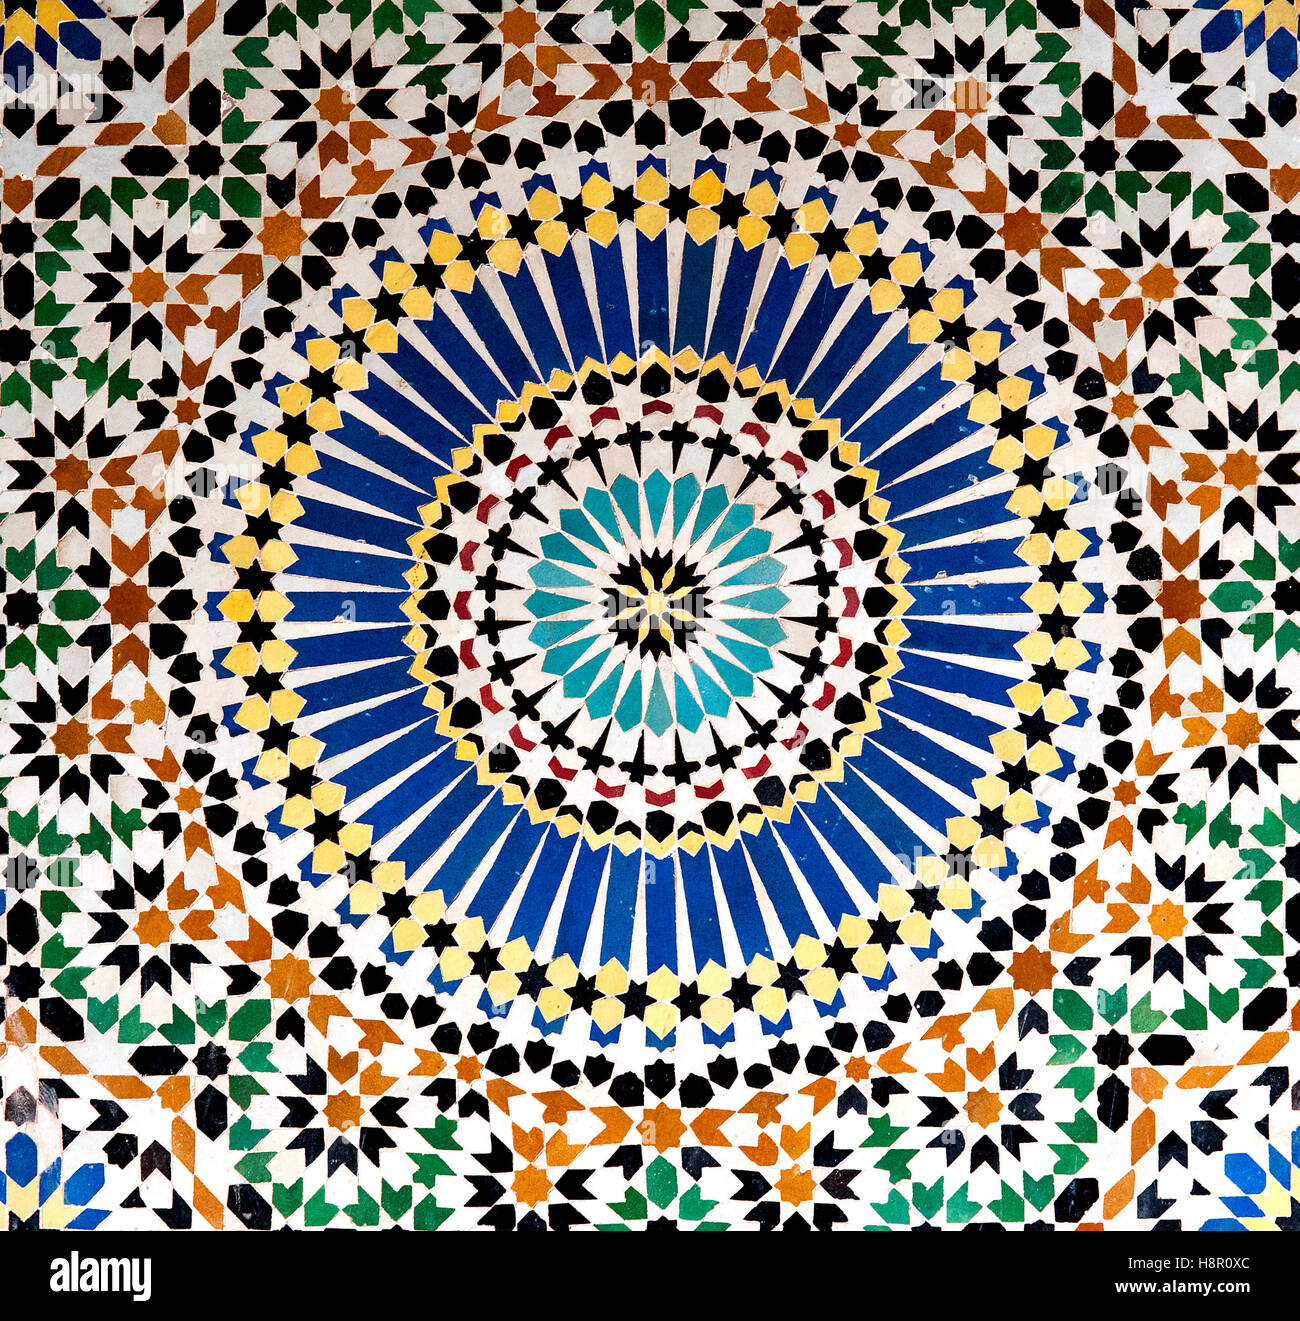 Mosaïque, Kasbah TELOUET, Maroc : les motifs géométriques colorés d'une mosaïque islamique décorent les murs de la Casbah Telouet. Banque D'Images